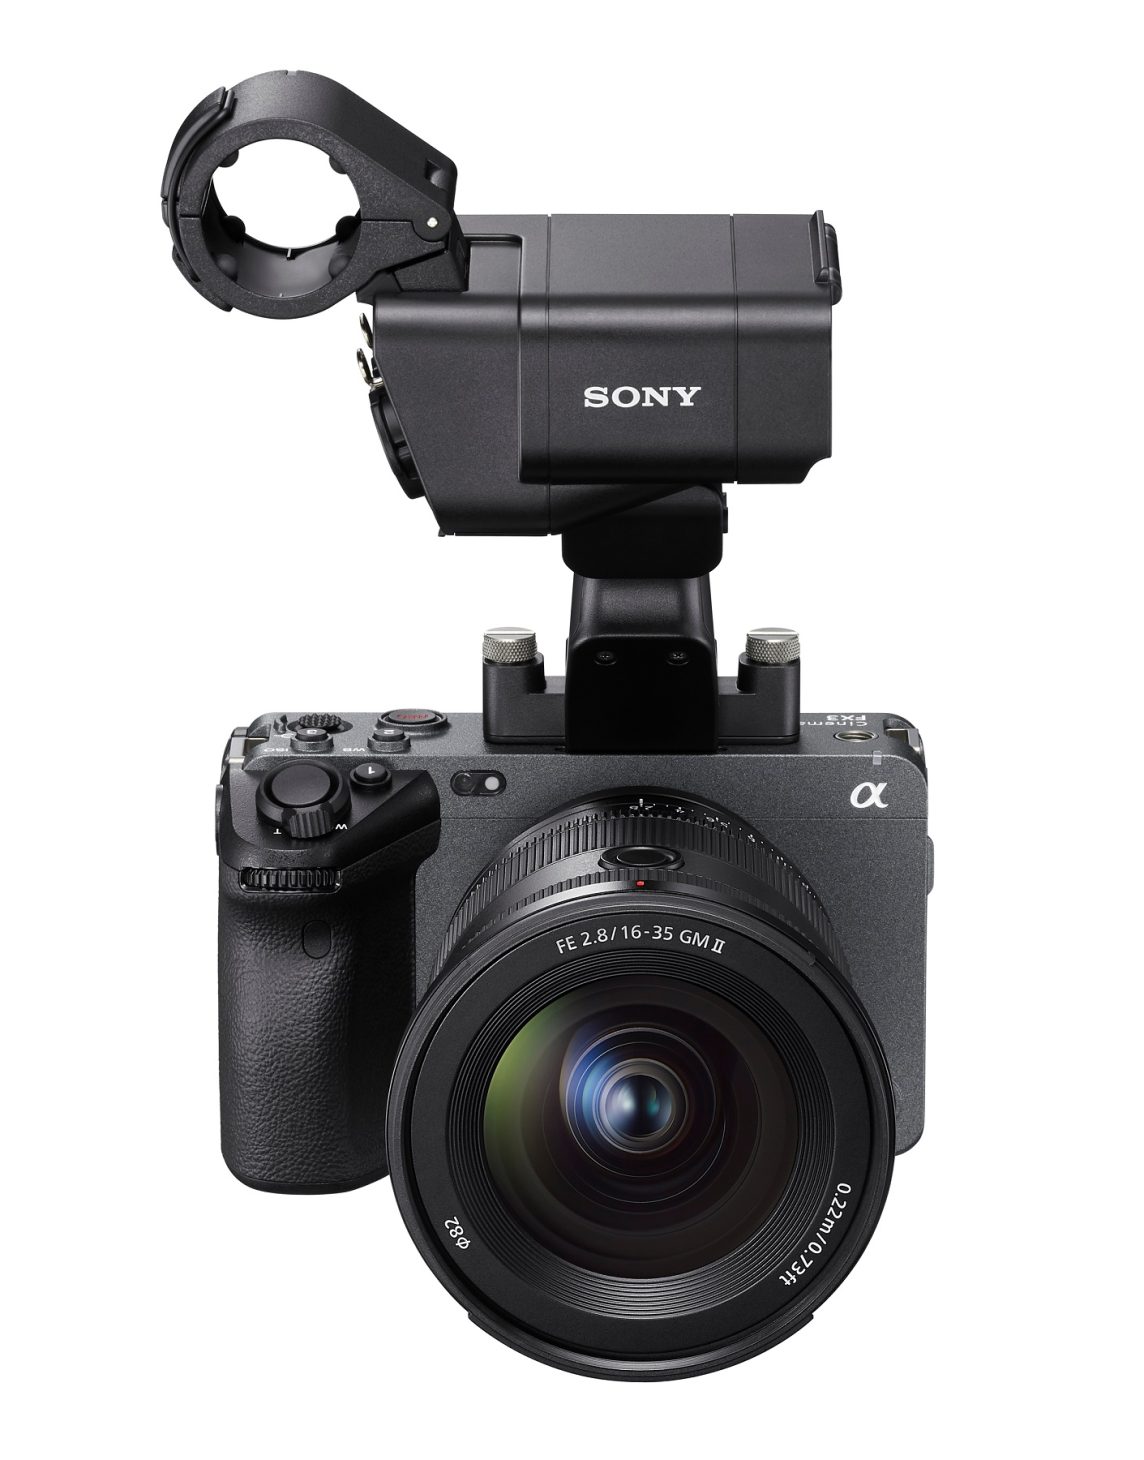 Sony ra mắt ống kính Zoom góc rộng nhỏ và nhẹ nhất thế giới - Sony 8 1